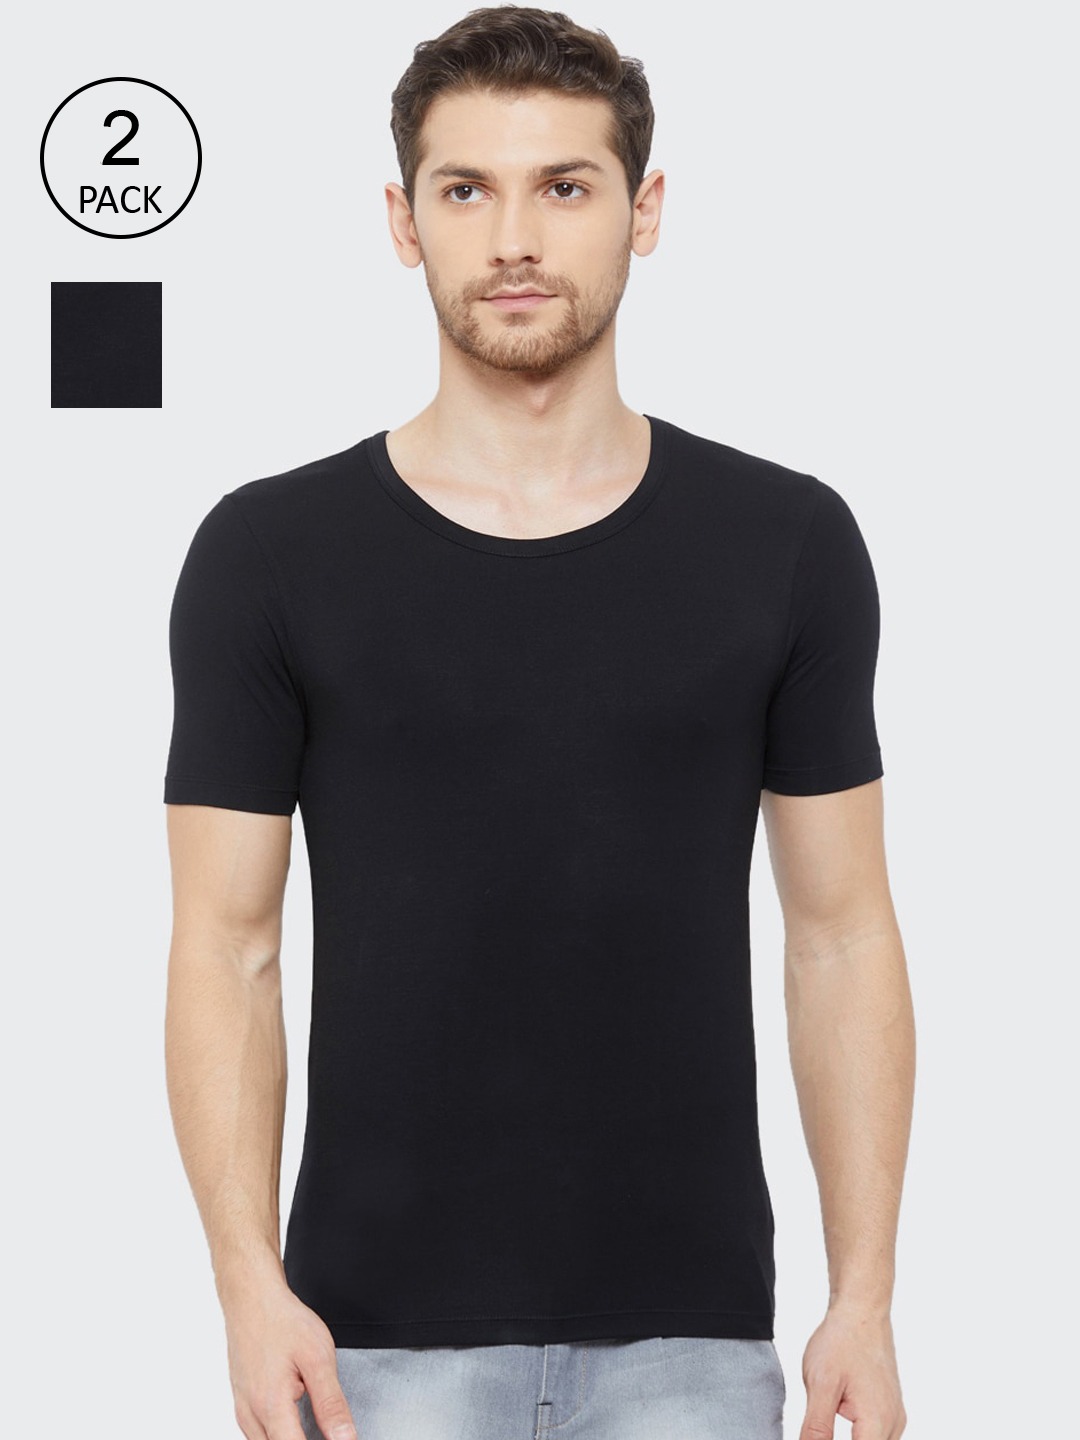 Clothing Innerwear Vests | Almo Wear Men Pack Of 2 Black Solid Slim-Fit Undershirt Innerwear Vests - JW65165